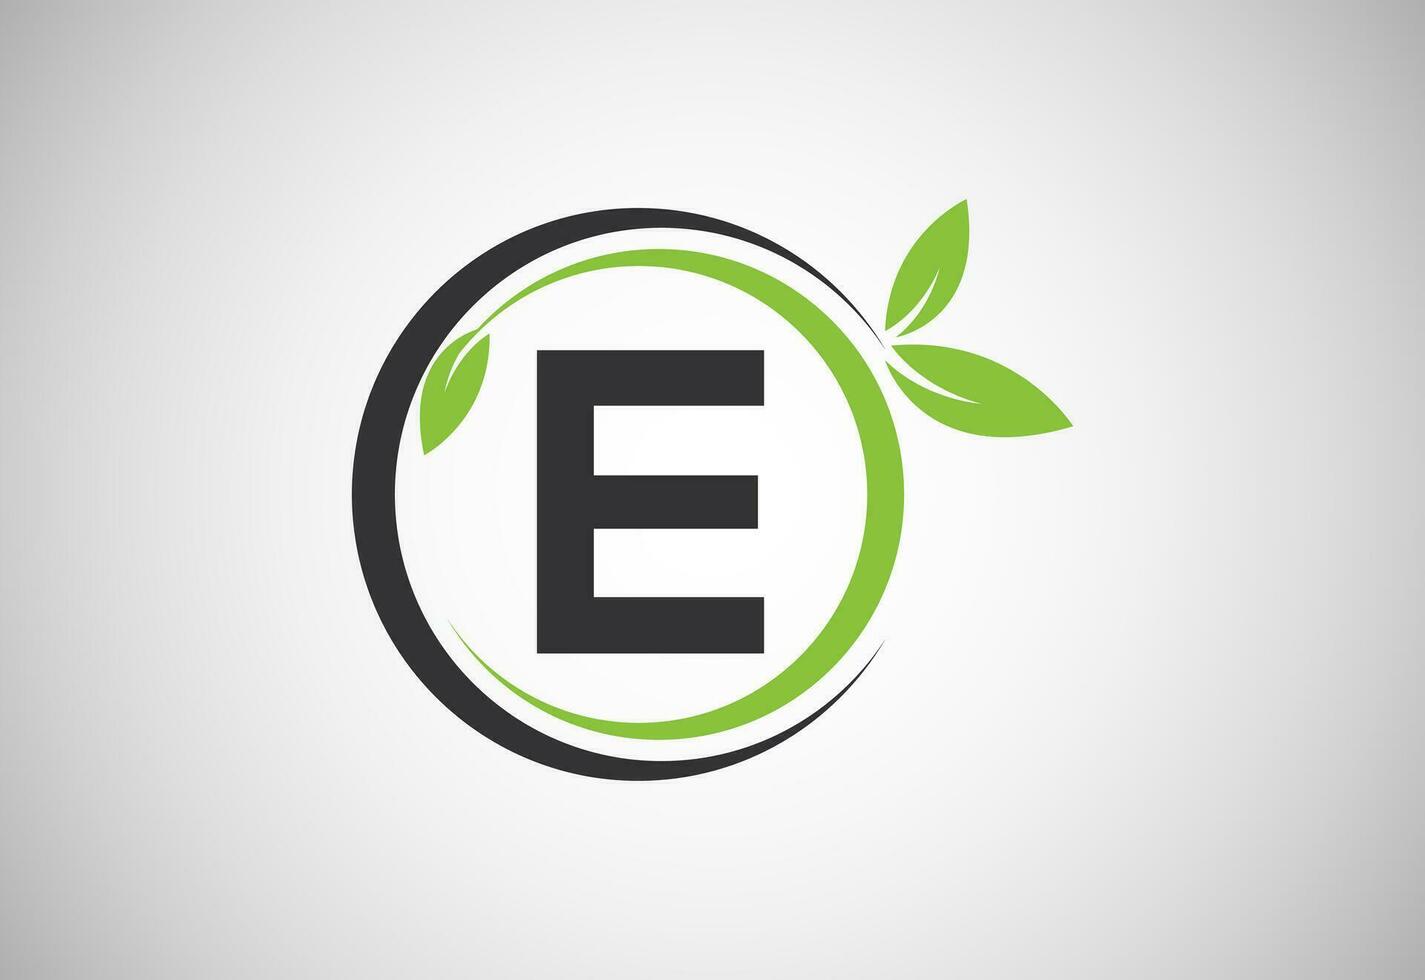 inglese alfabeto e con verde le foglie. organico, eco-friendly logo design vettore modello